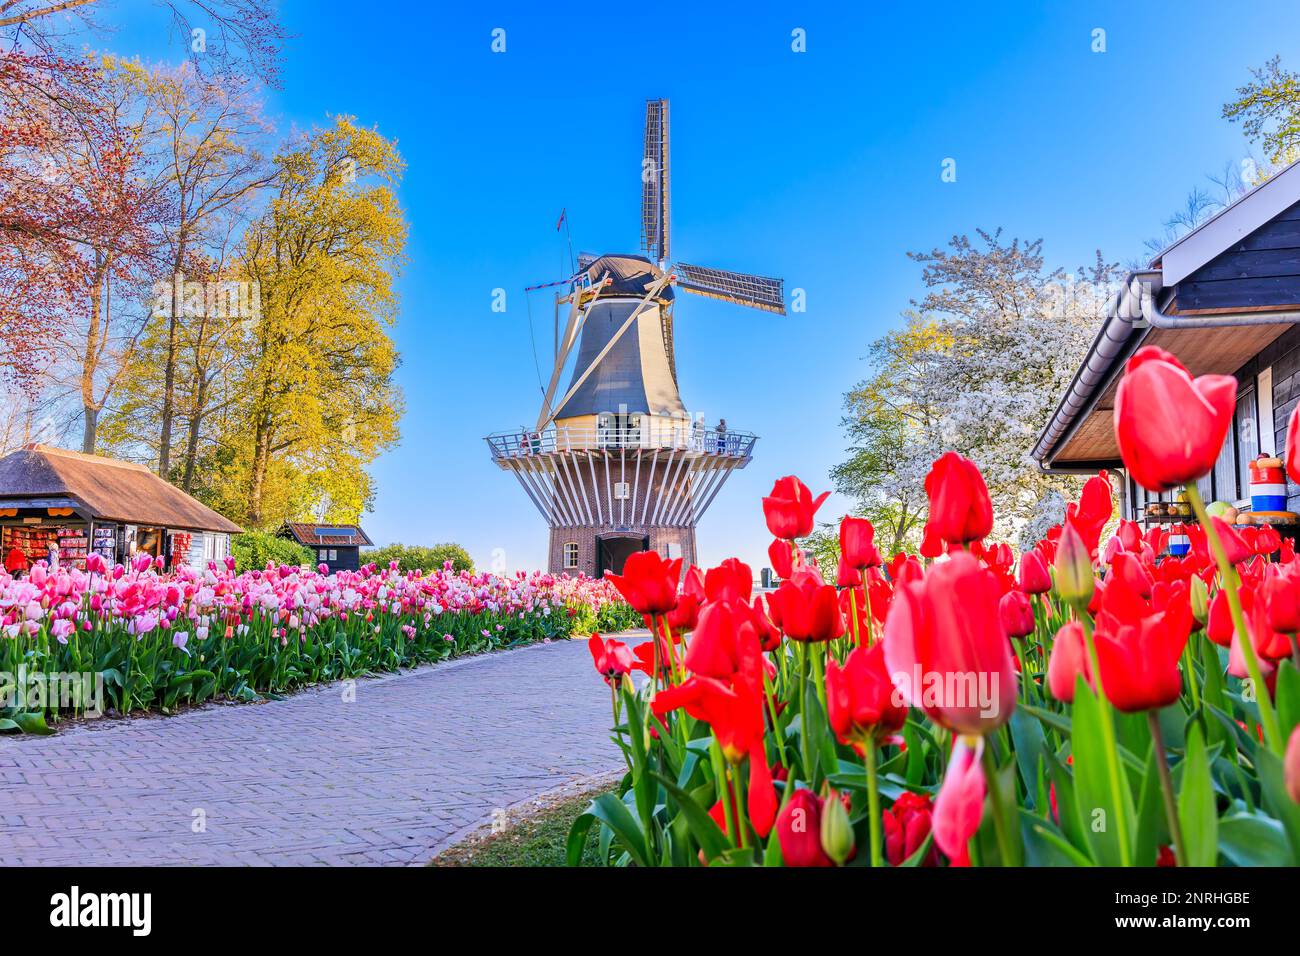 Tulipani colorati fioriti nel giardino fiorito pubblico con mulino a vento. Lisse, Olanda, Paesi Bassi. Foto Stock